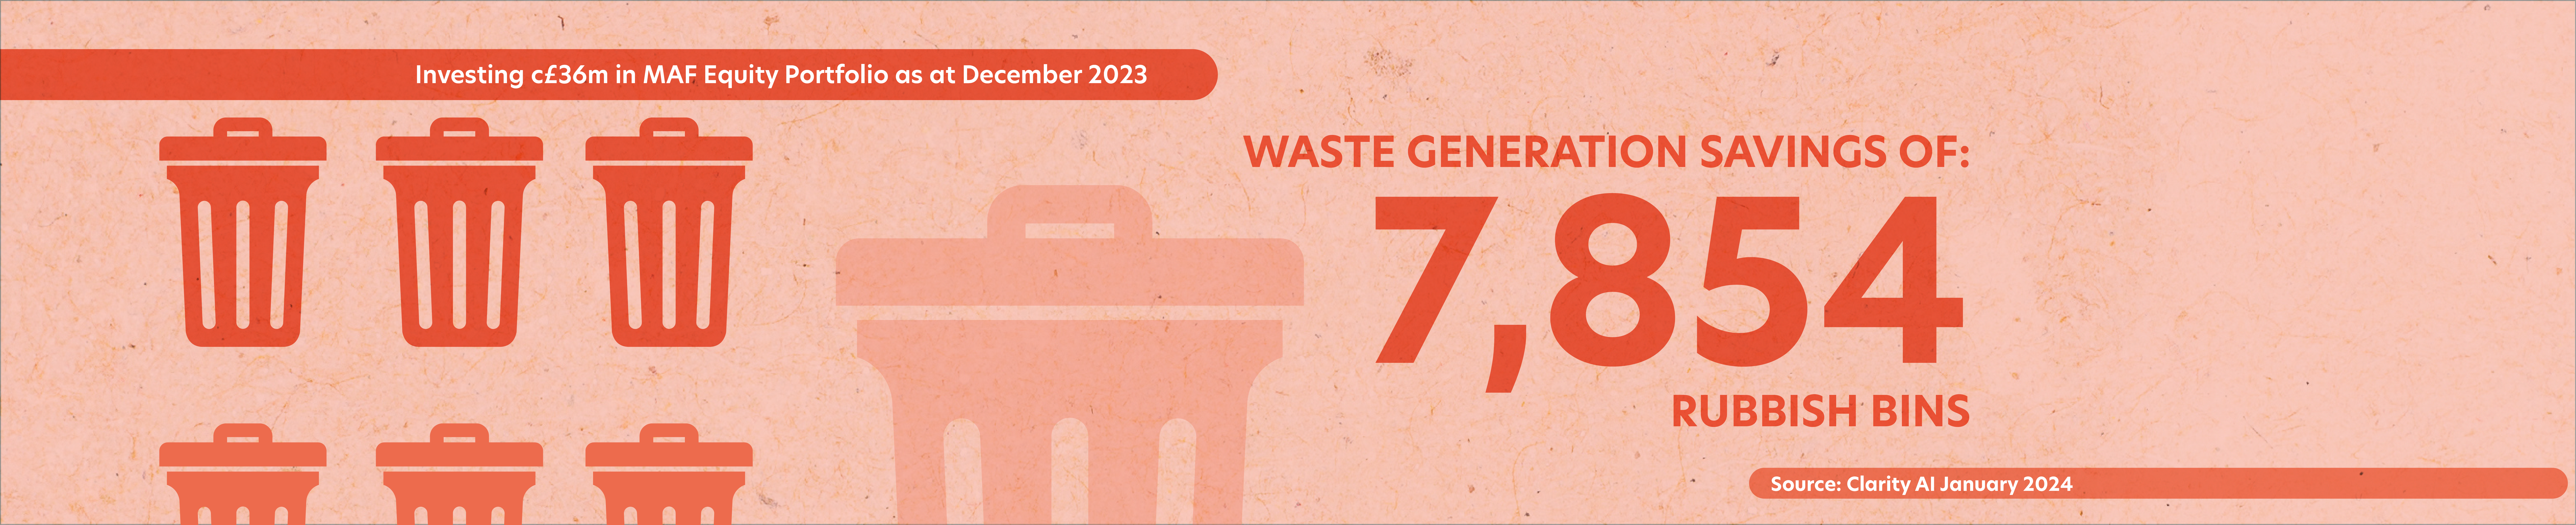 Waste Generation_Banner_v2